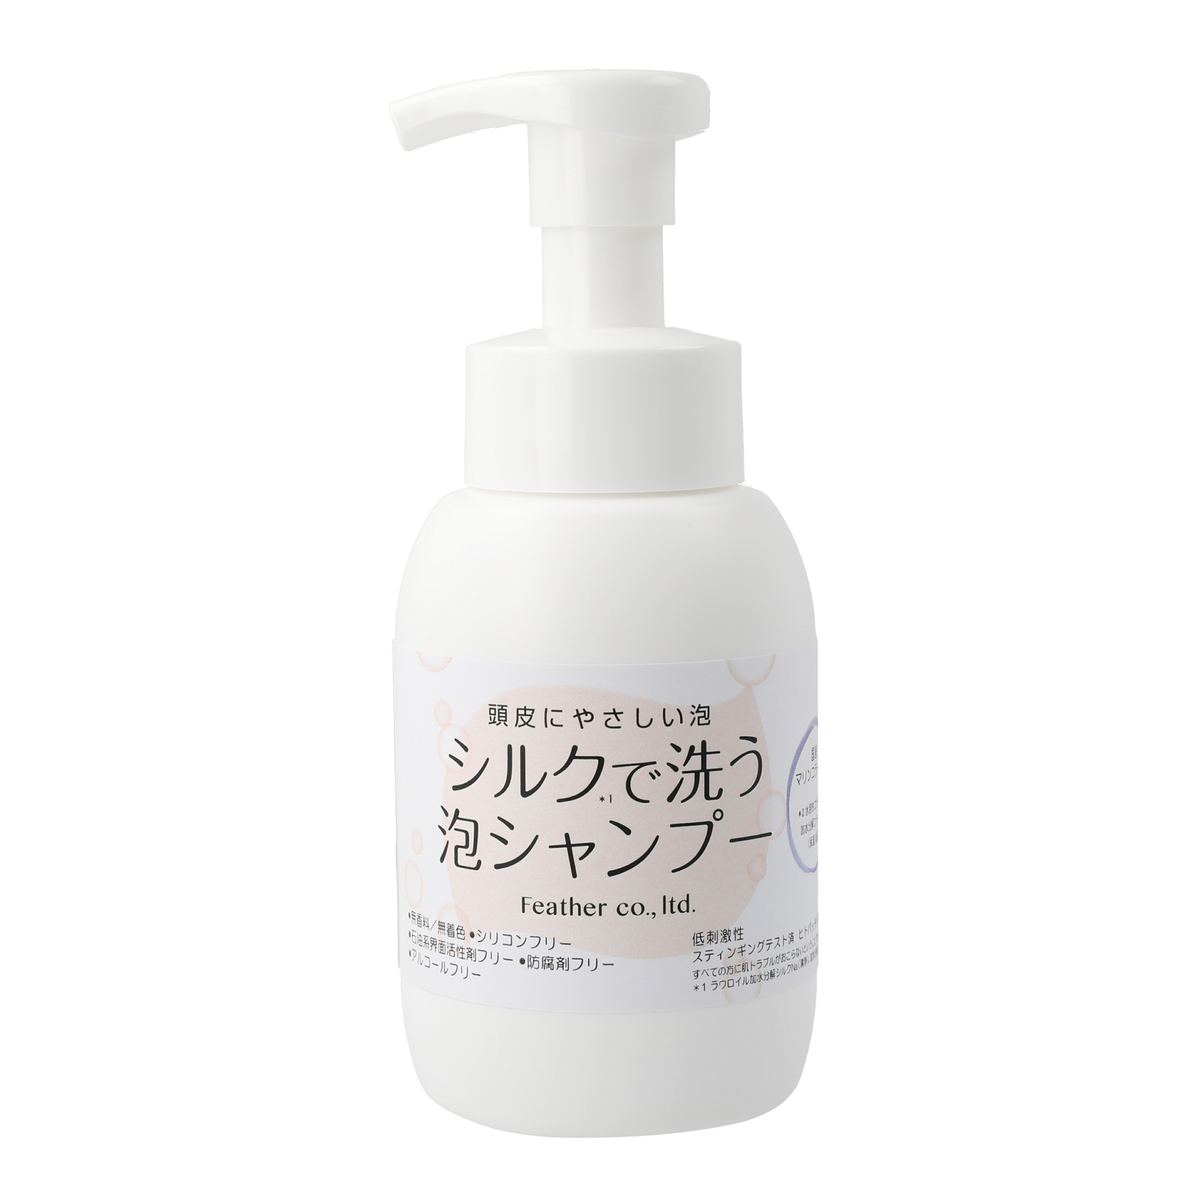 シルクで洗う泡シャンプー 300ml - QVC.jp